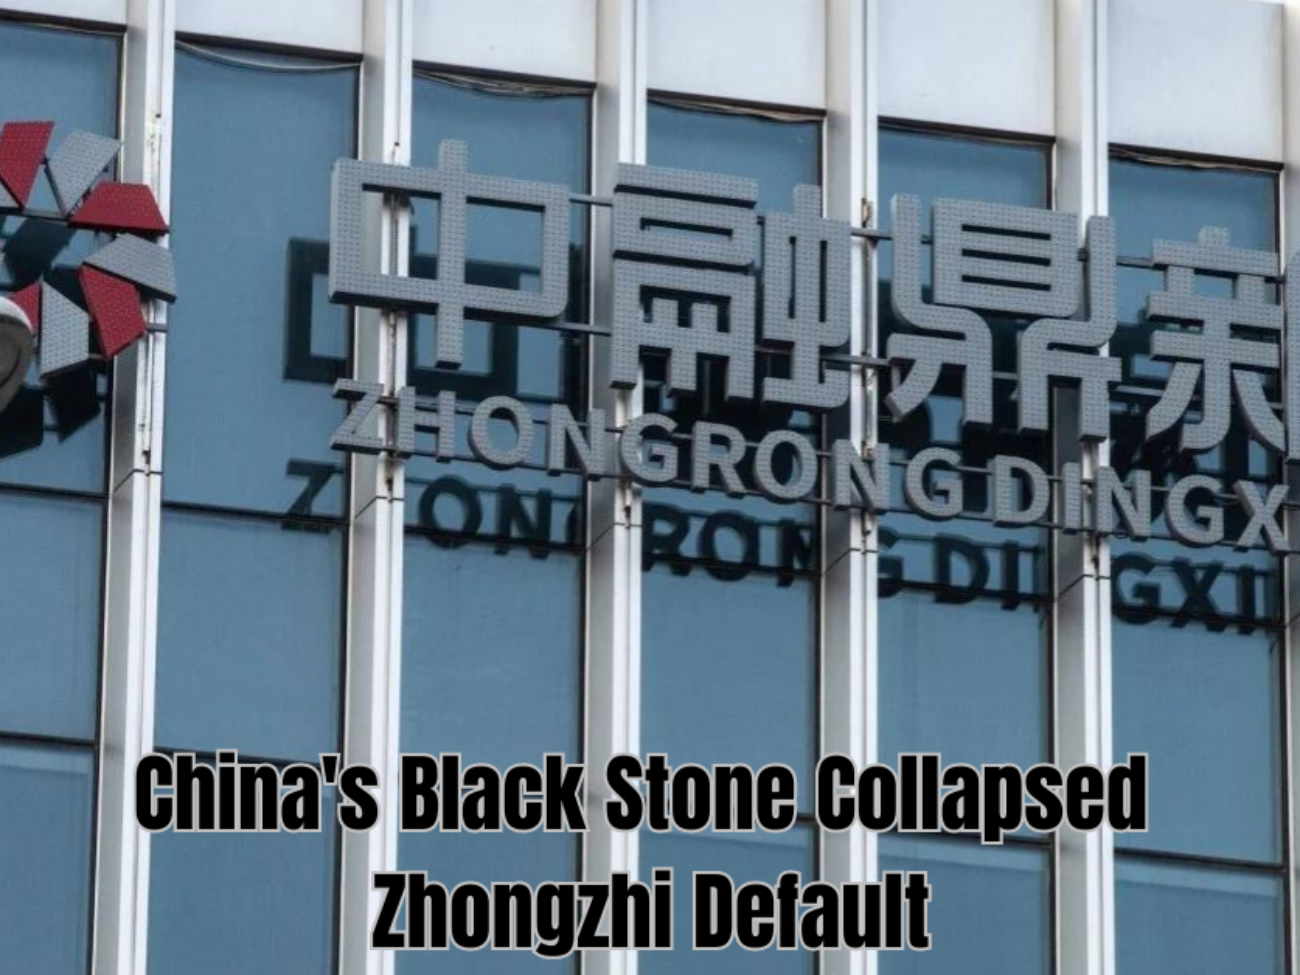 Zhongzhi Default